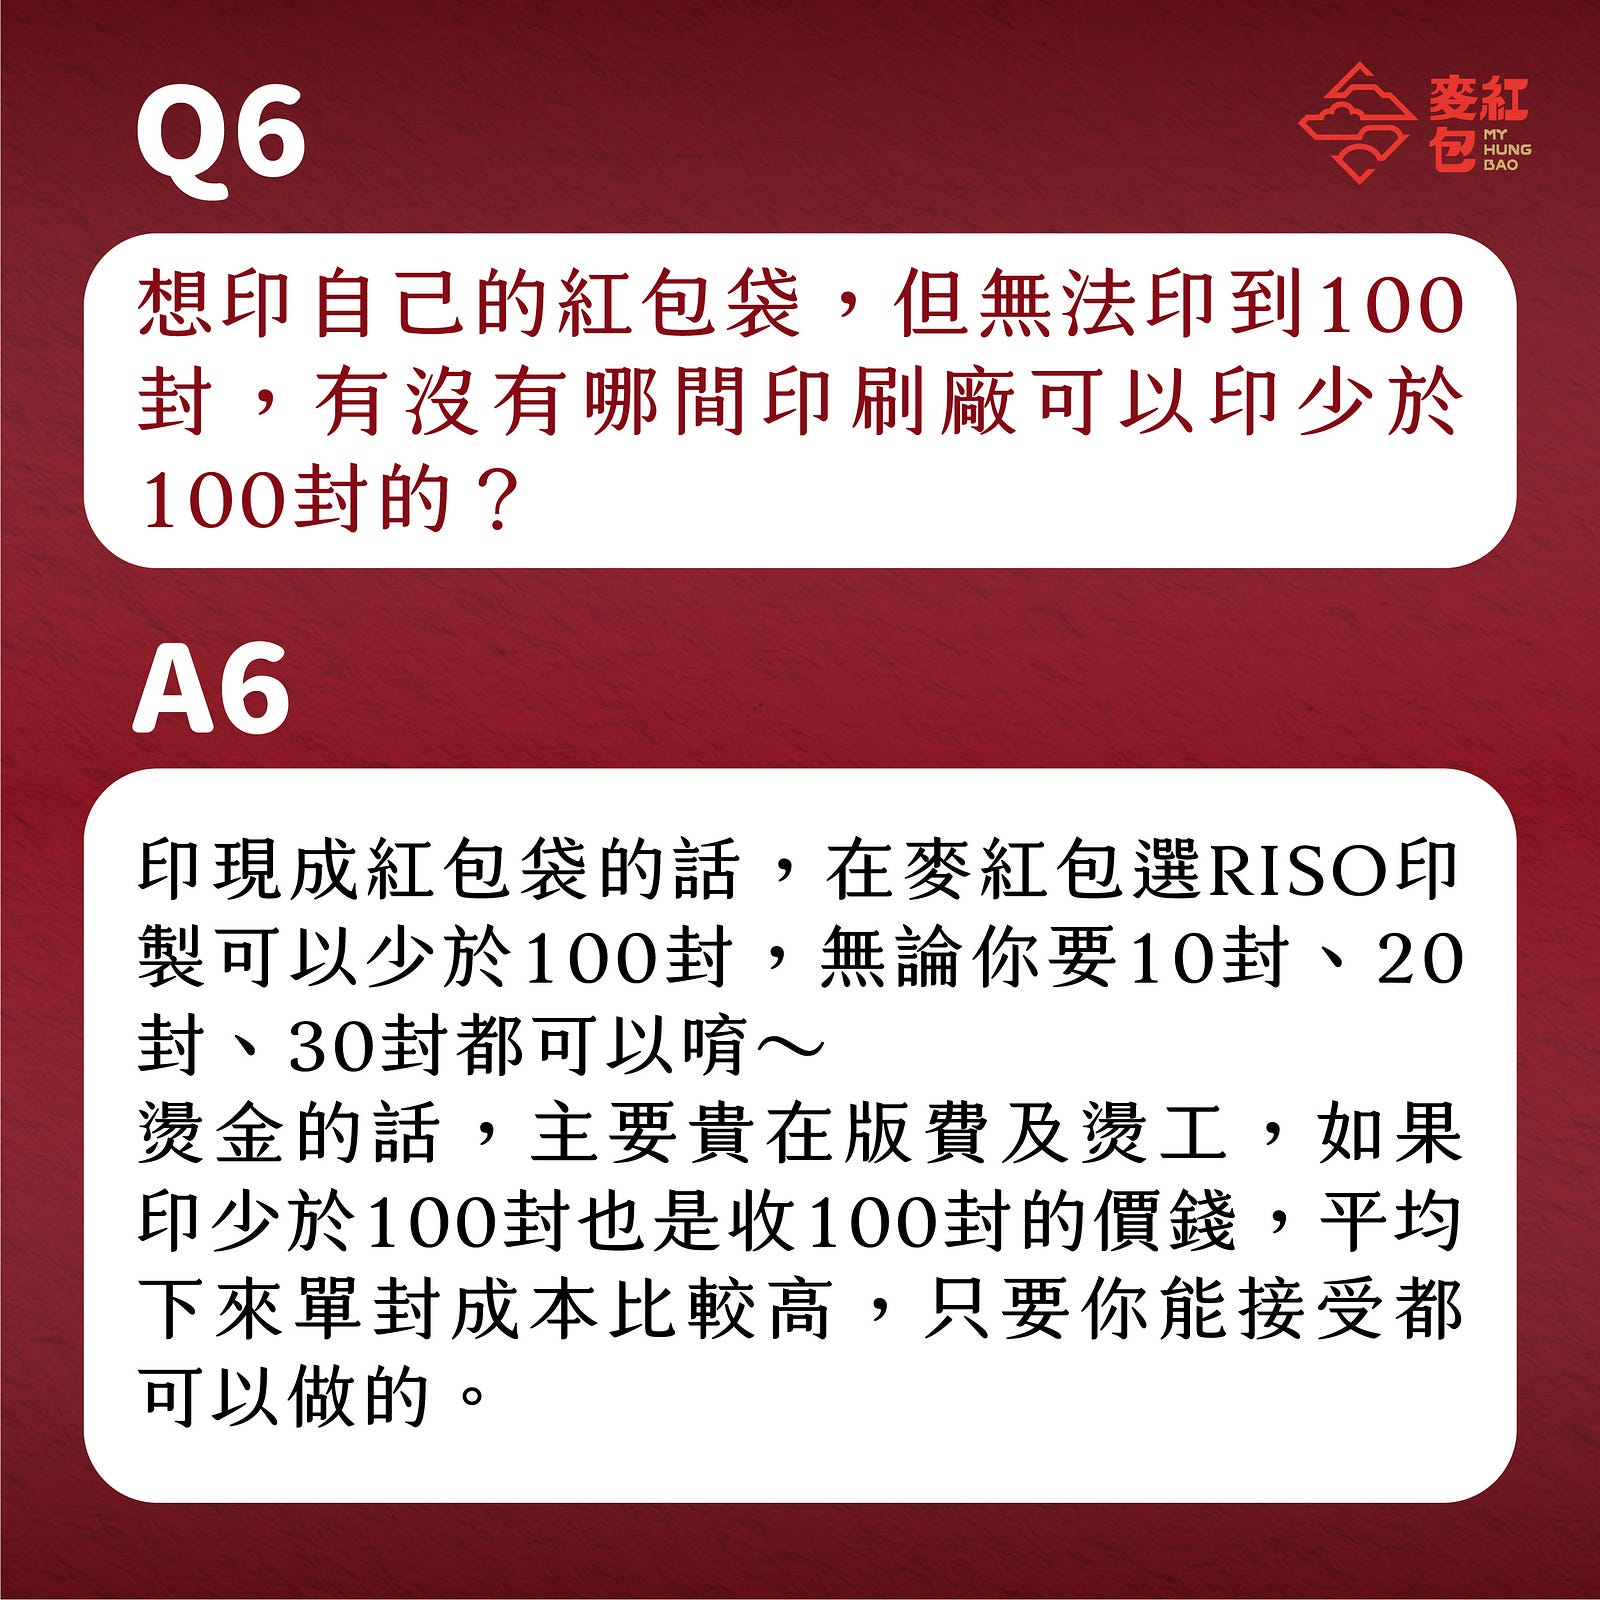 【印前Q&A】網友最常問的10個紅包印製問題-Q6：想印自己的紅包袋，但無法印到100封，有沒有哪間印刷廠可以印少於100封的？